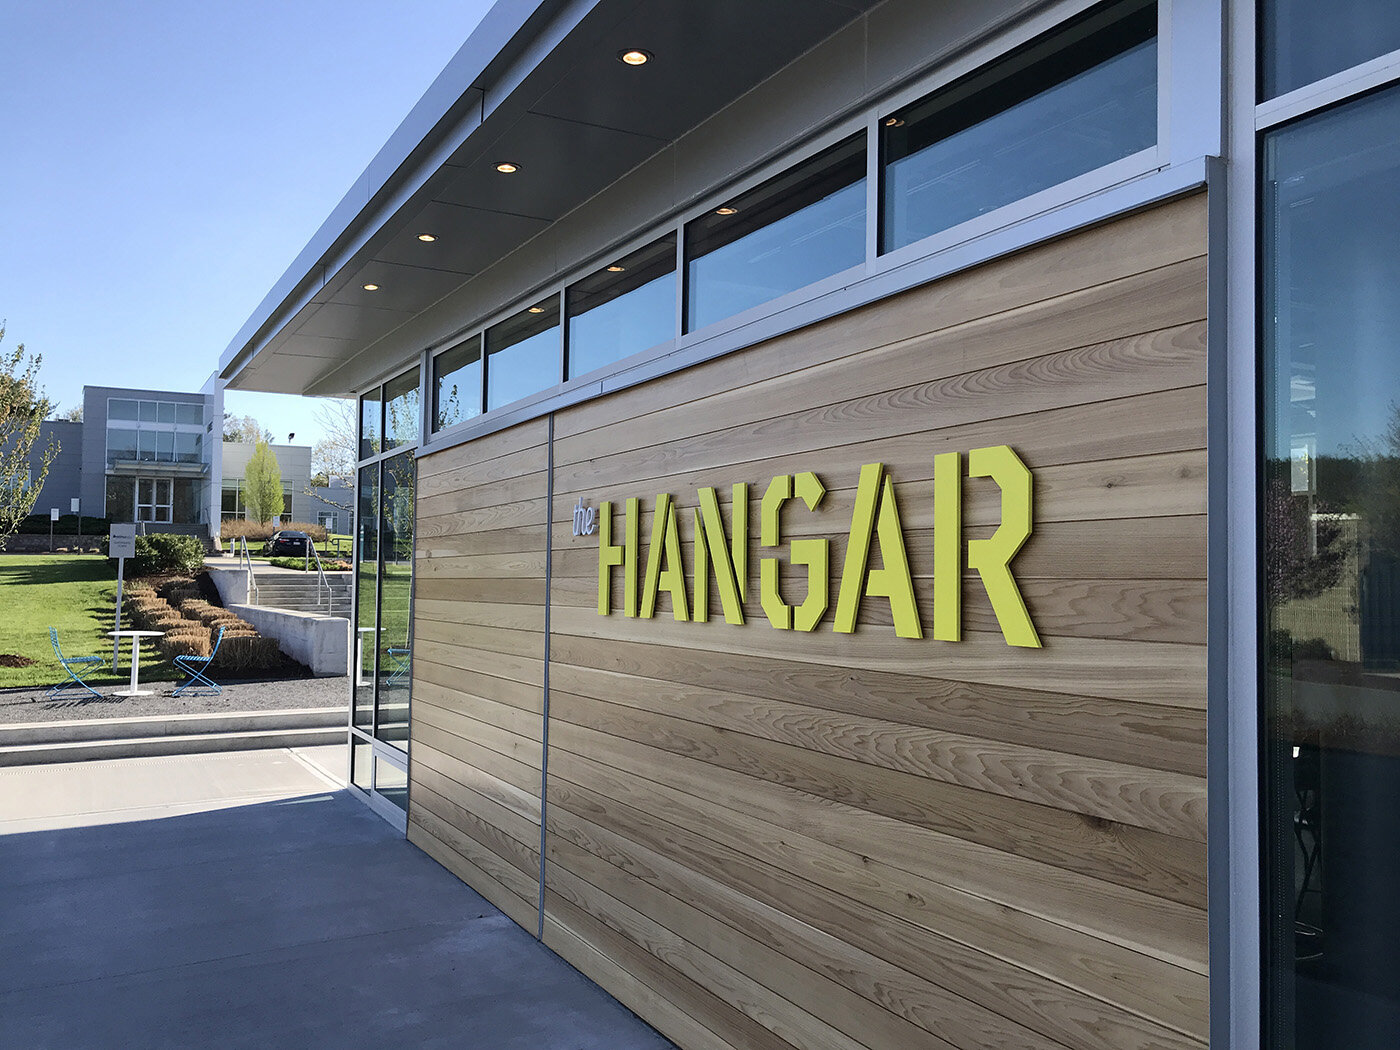 The Hangar Cafe